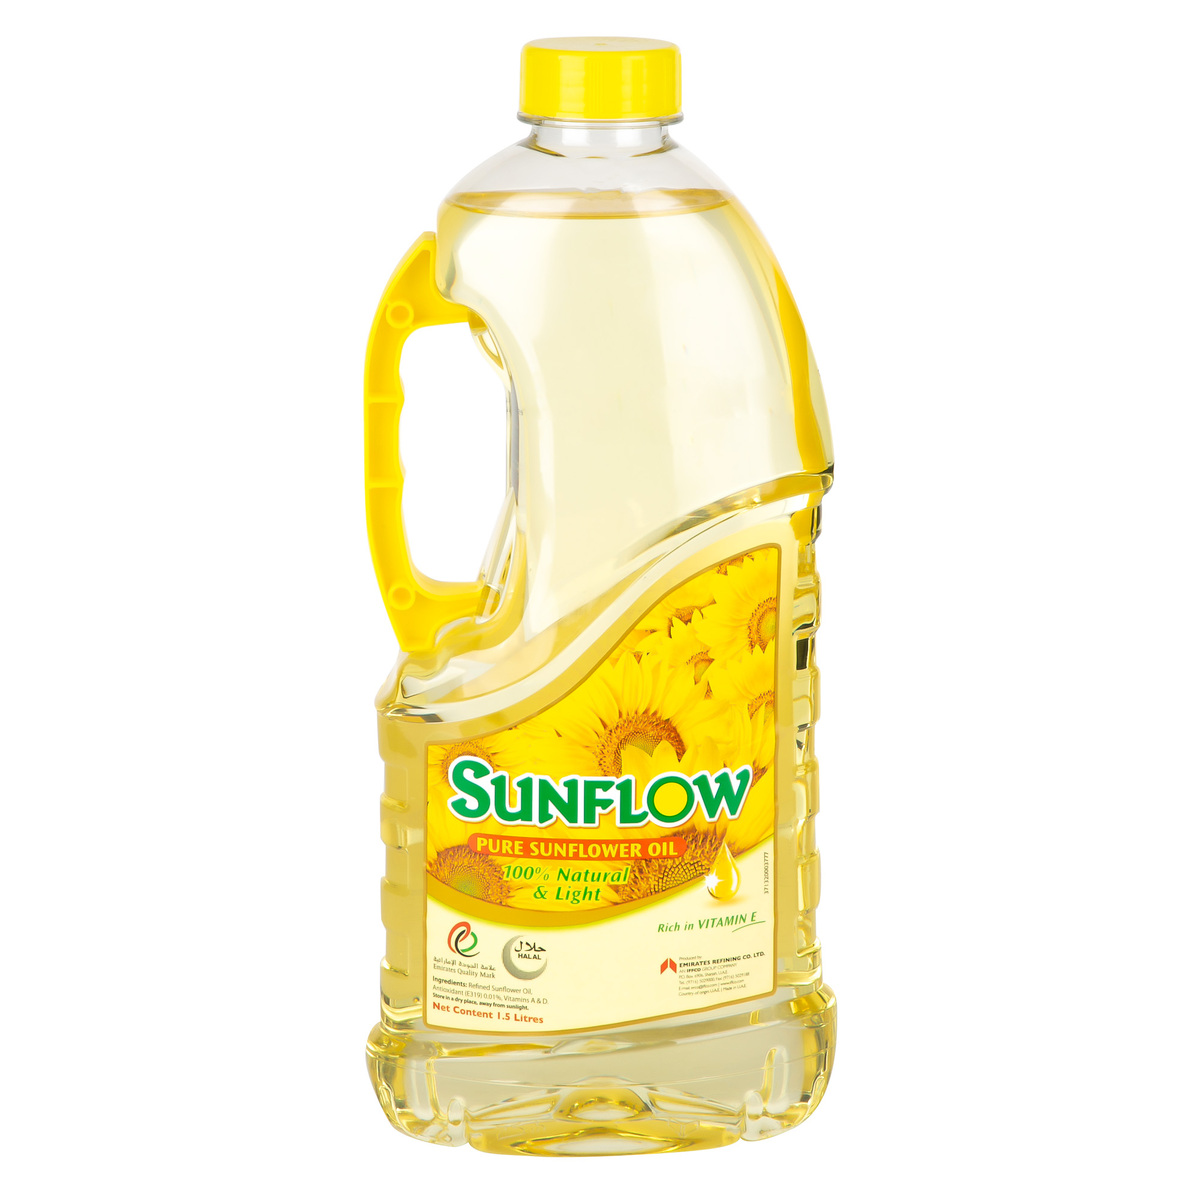 Sunflow Sunflower Oil 1.5 Lt Wholesale Tradeling